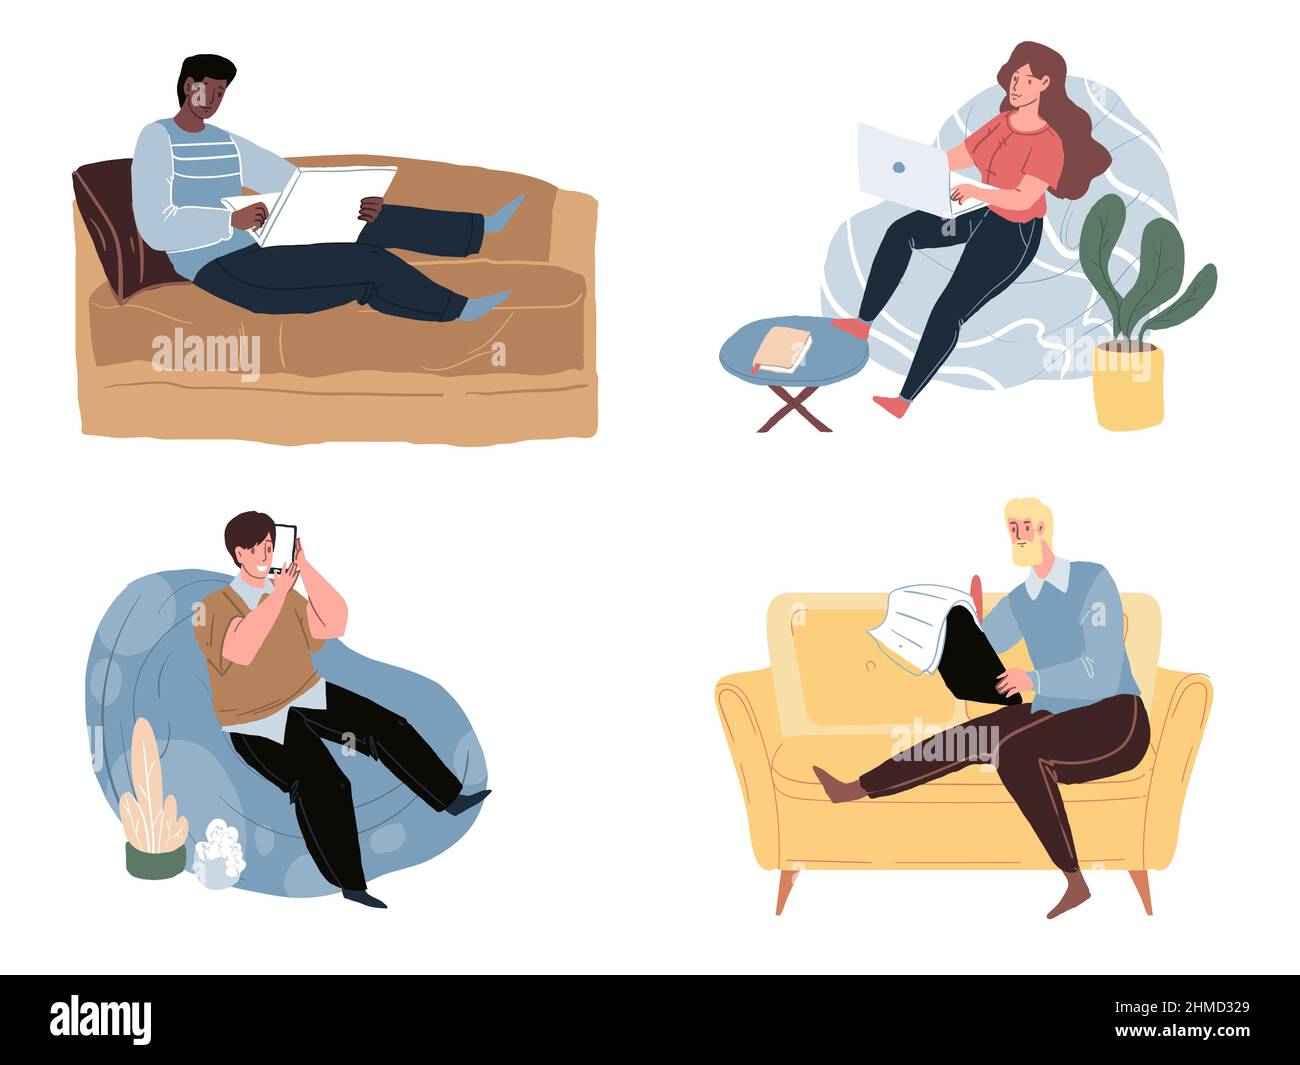 Personajes planos de dibujos animados sentados en sofá y sillas, ocio en casa y juego de ilustraciones de vectores de trabajo en línea Ilustración del Vector